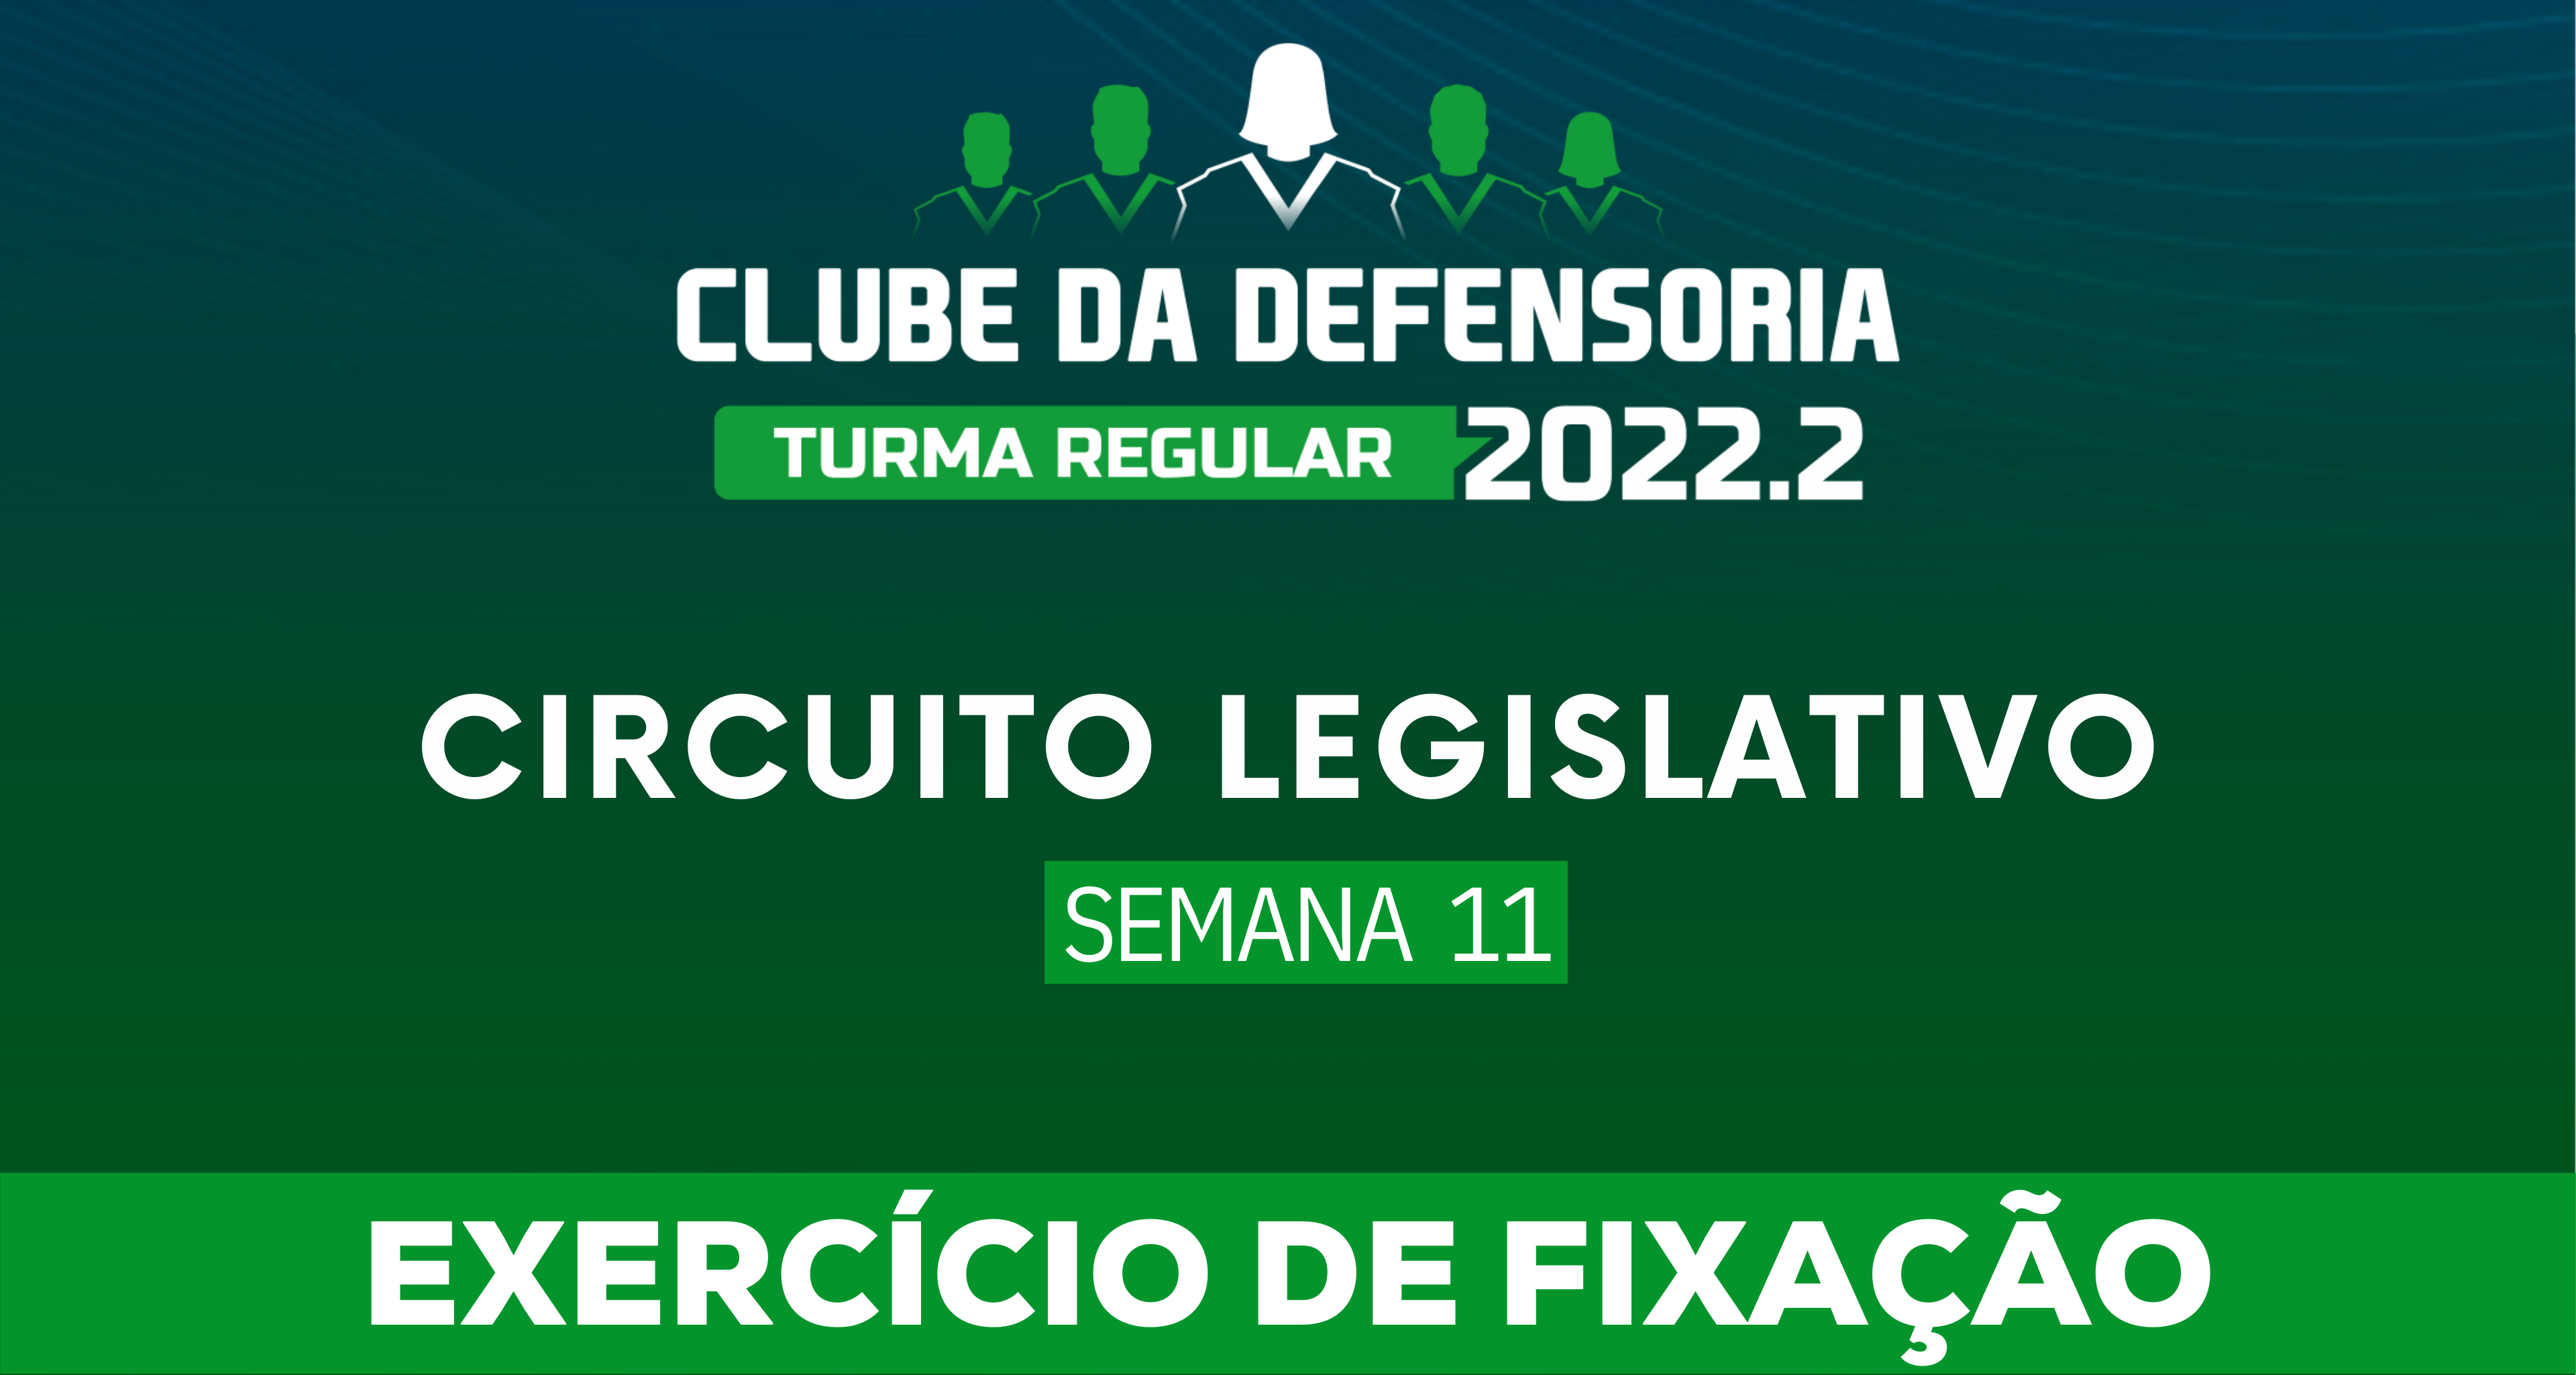 Circuito Legislativo 2022.2 (Clube da Defensoria - Semana 11)